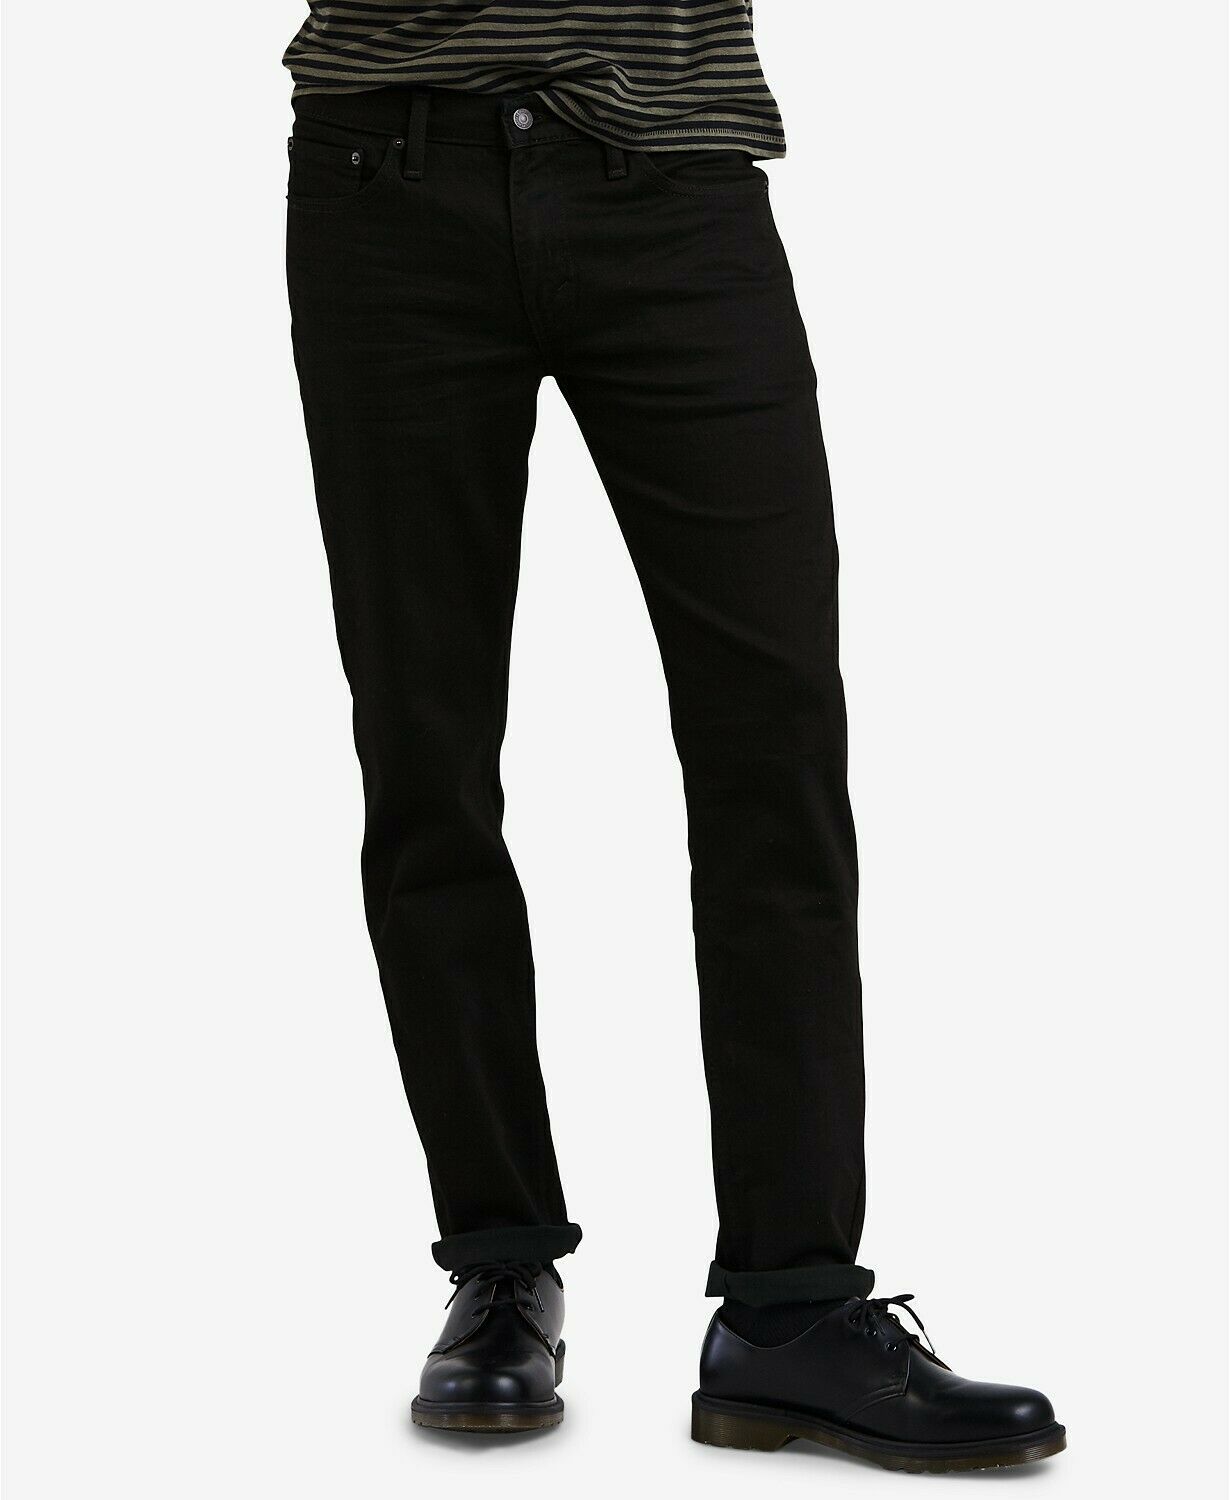 Homme Levi's 511 Jean Slim Casual Coton Noir Gris Pantalon Taille 28-40 ...